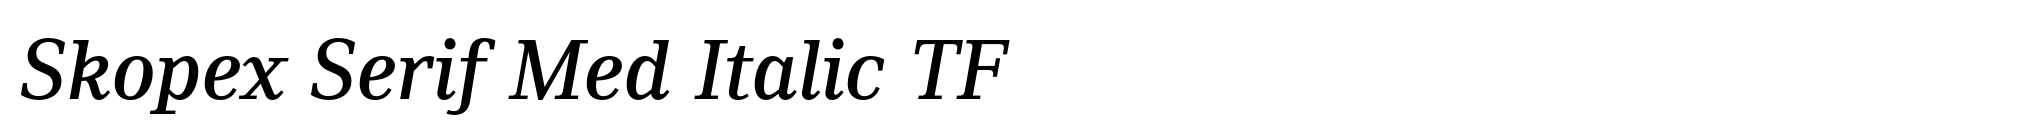 Skopex Serif Med Italic TF image